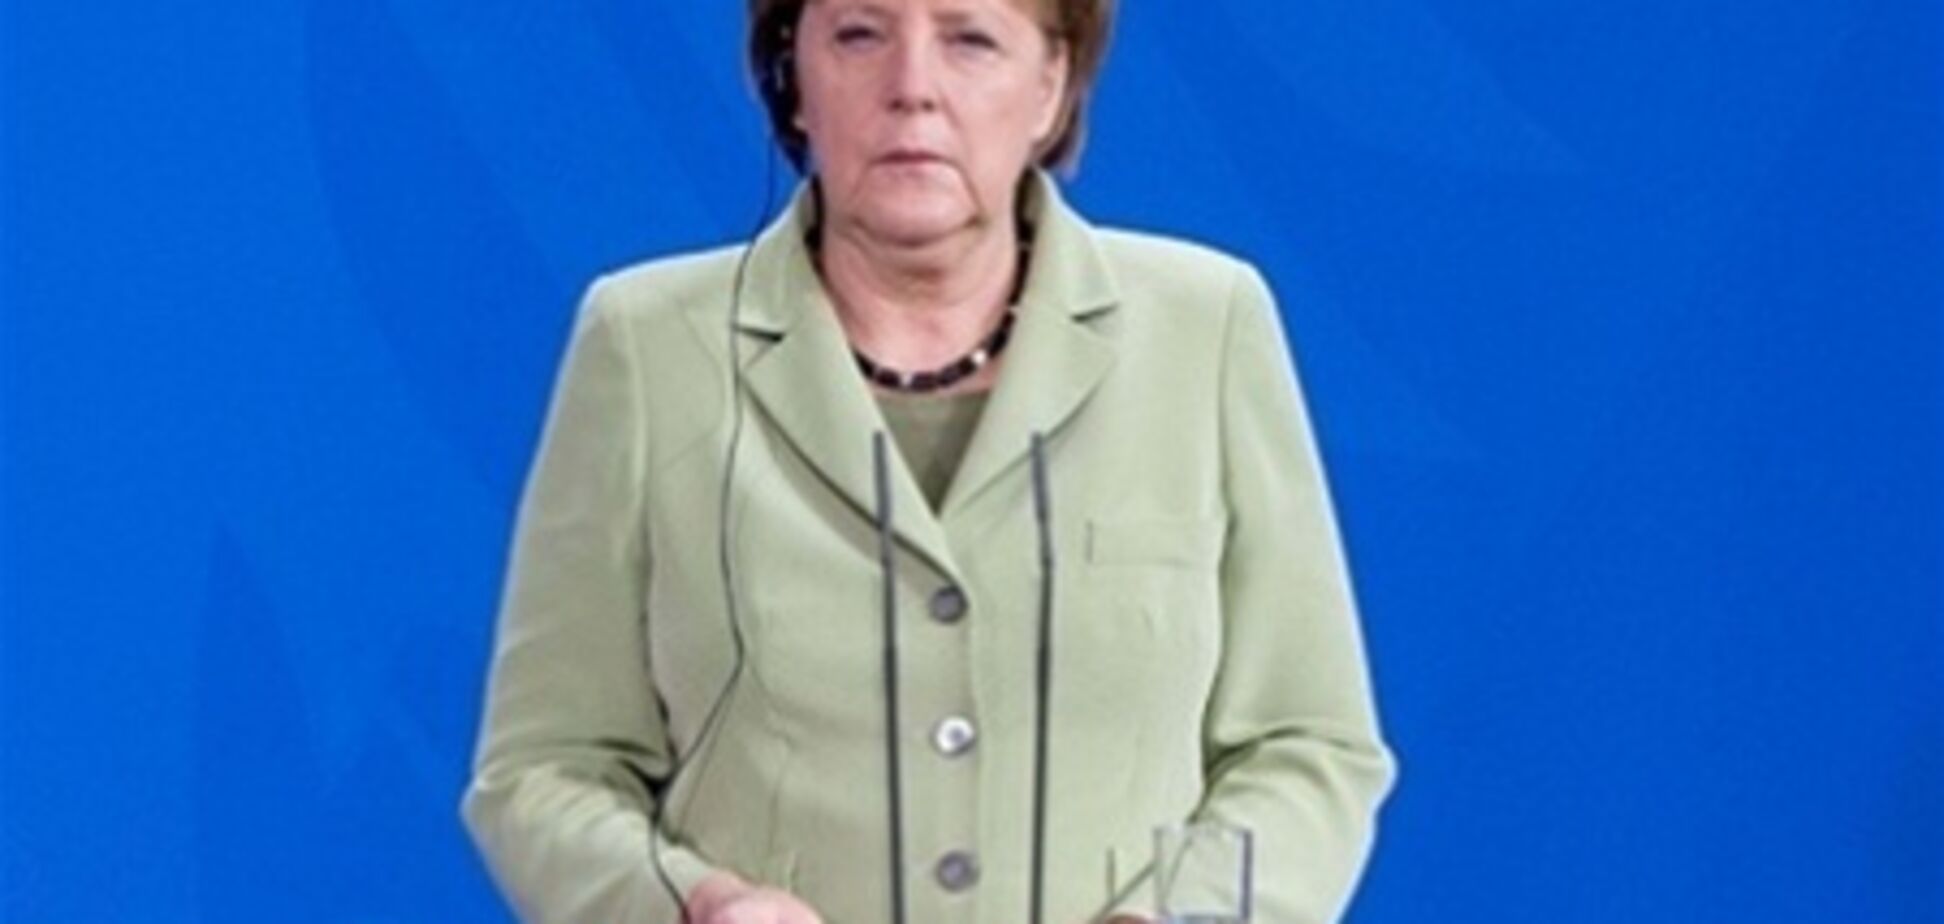 Меркель призвала ЕС усилить защиту секретной информации